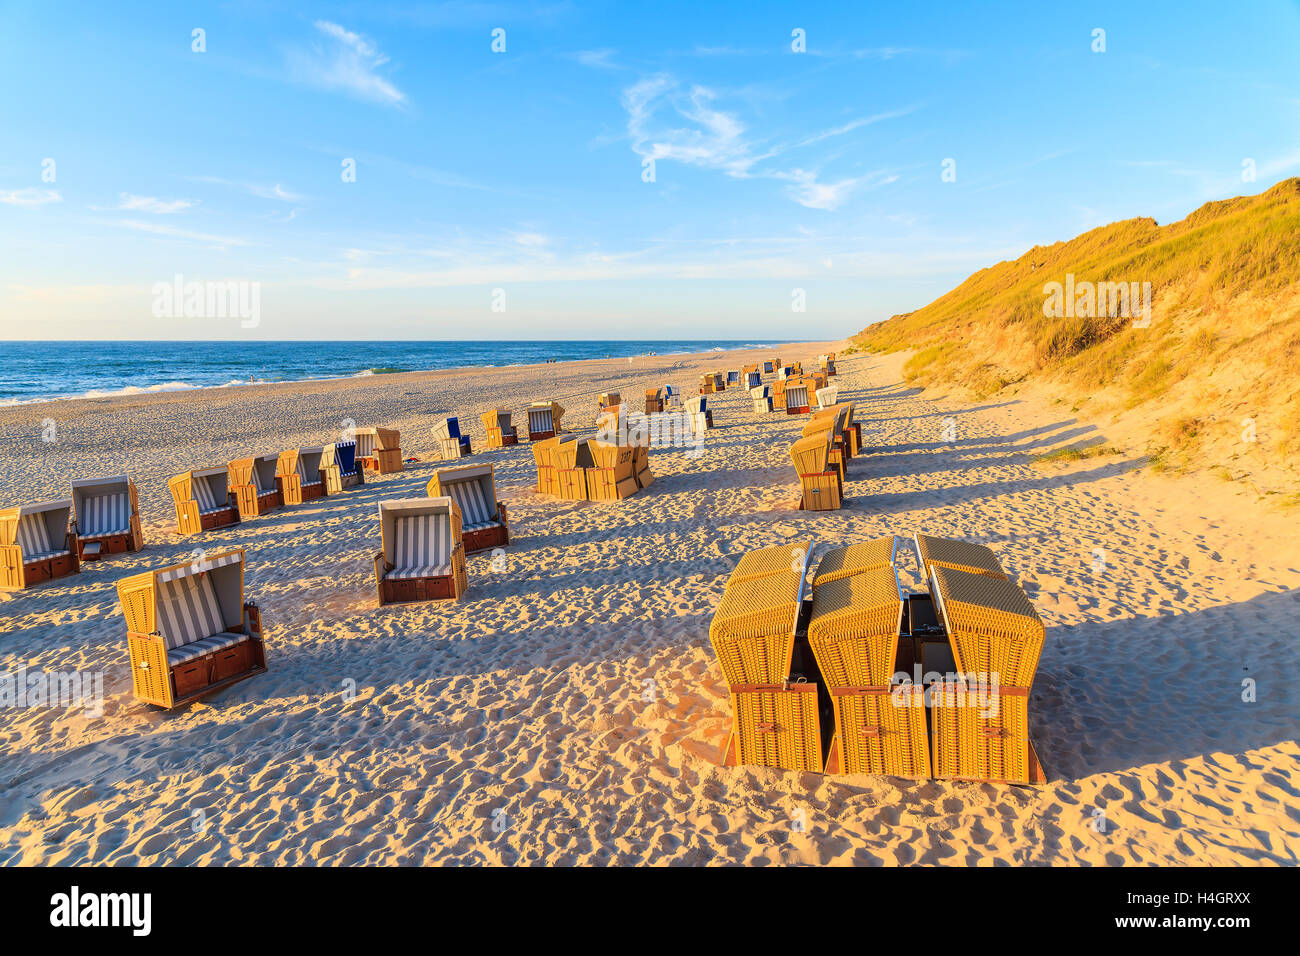 Chaises de plage au coucher du soleil, l'île de Sylt, Allemagne Banque D'Images